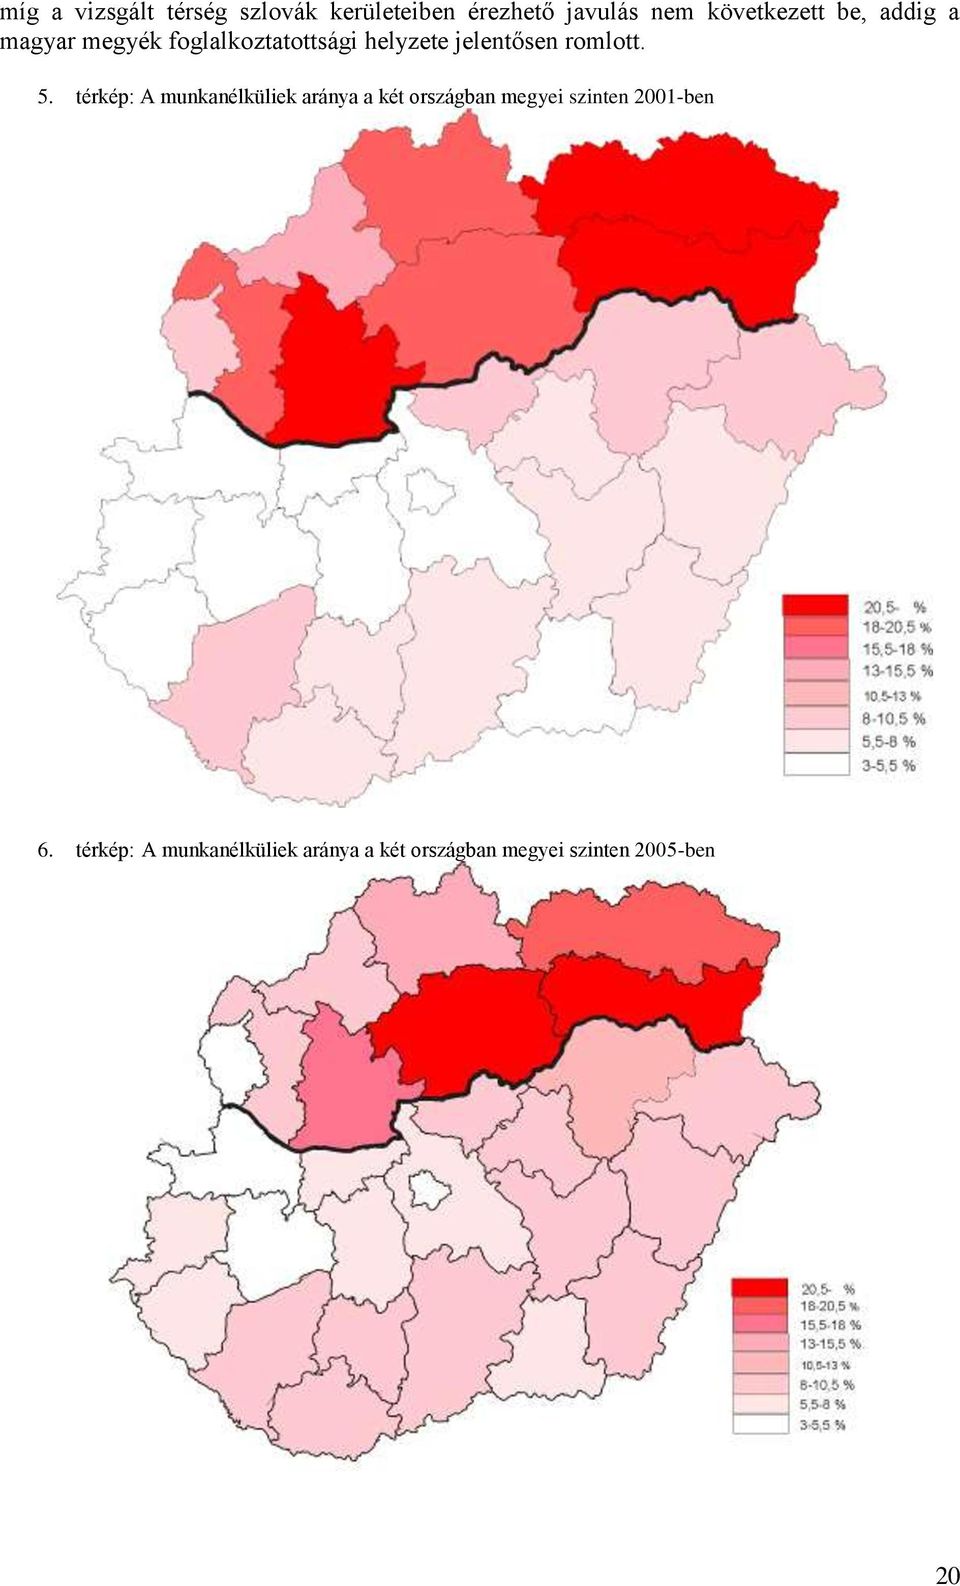 5. térkép: A munkanélküliek aránya a két országban megyei szinten 2001-ben